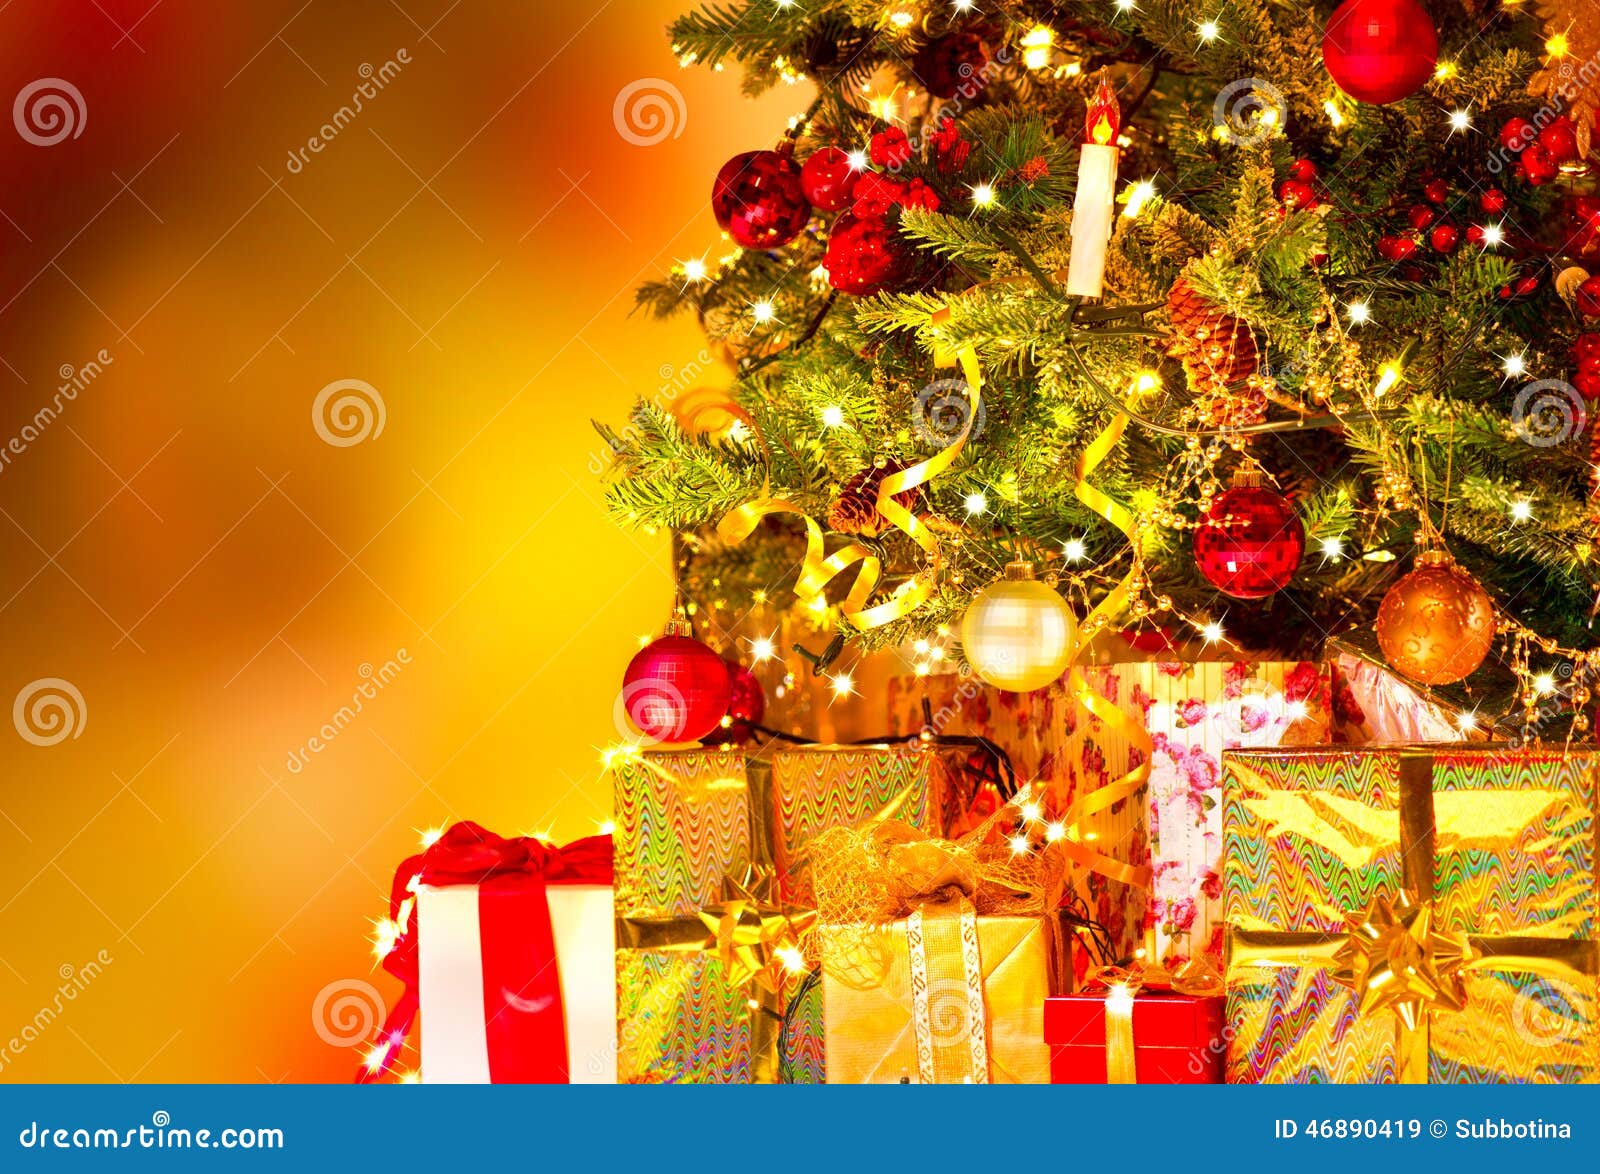 Regali Sotto L Albero Di Natale.Regali Sotto L Albero Di Natale Immagine Stock Immagine Di Interno Casella 46890419